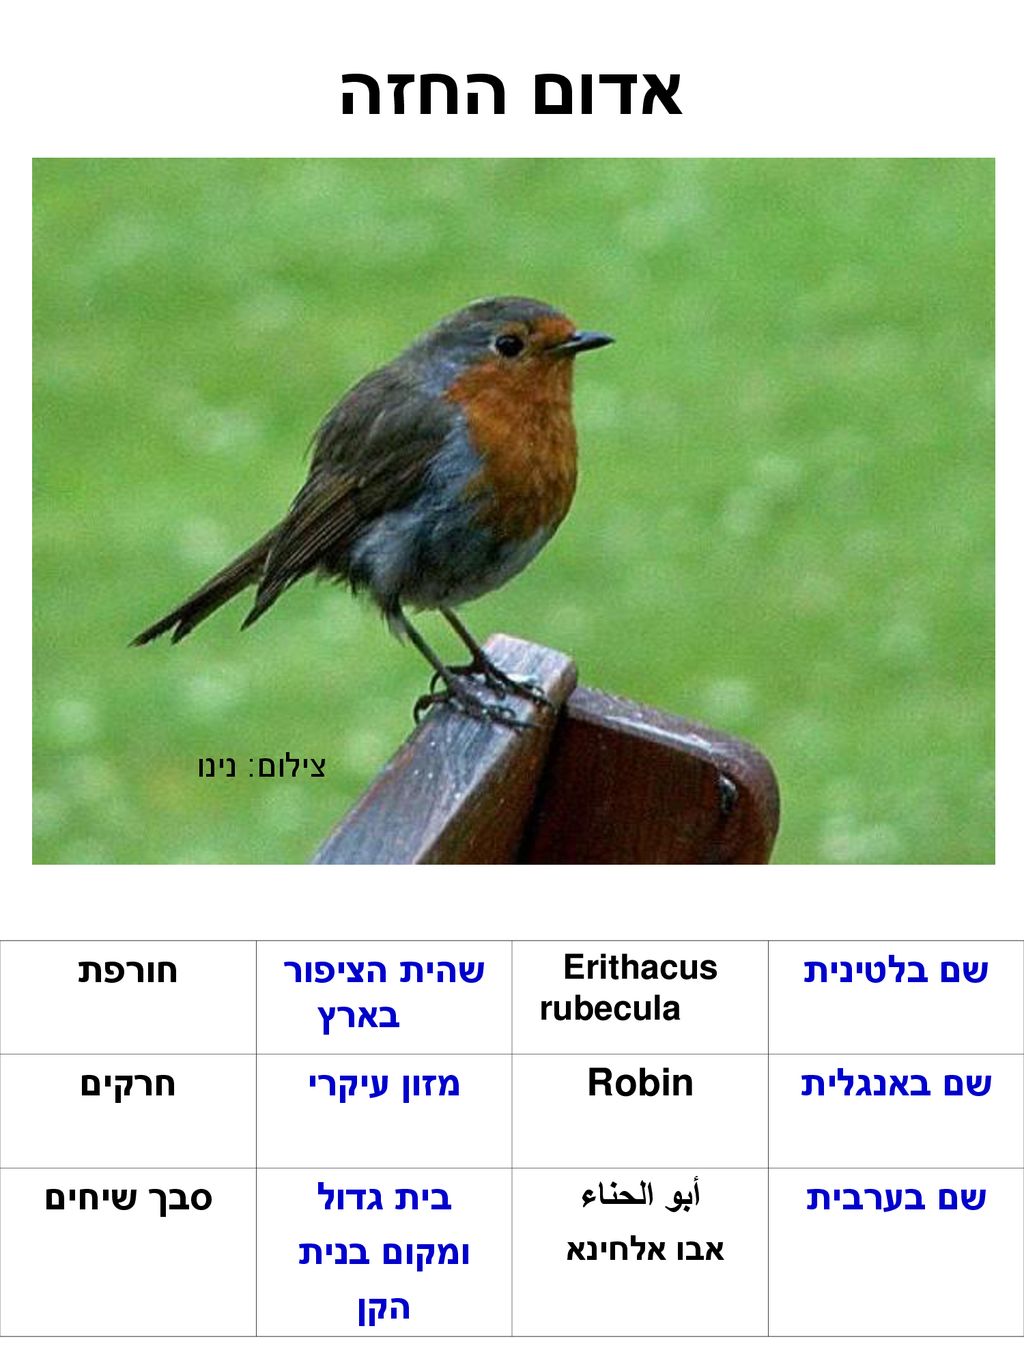 אדום החזה שם בלטינית שהית הציפור בארץ חורפת שם באנגלית Robin